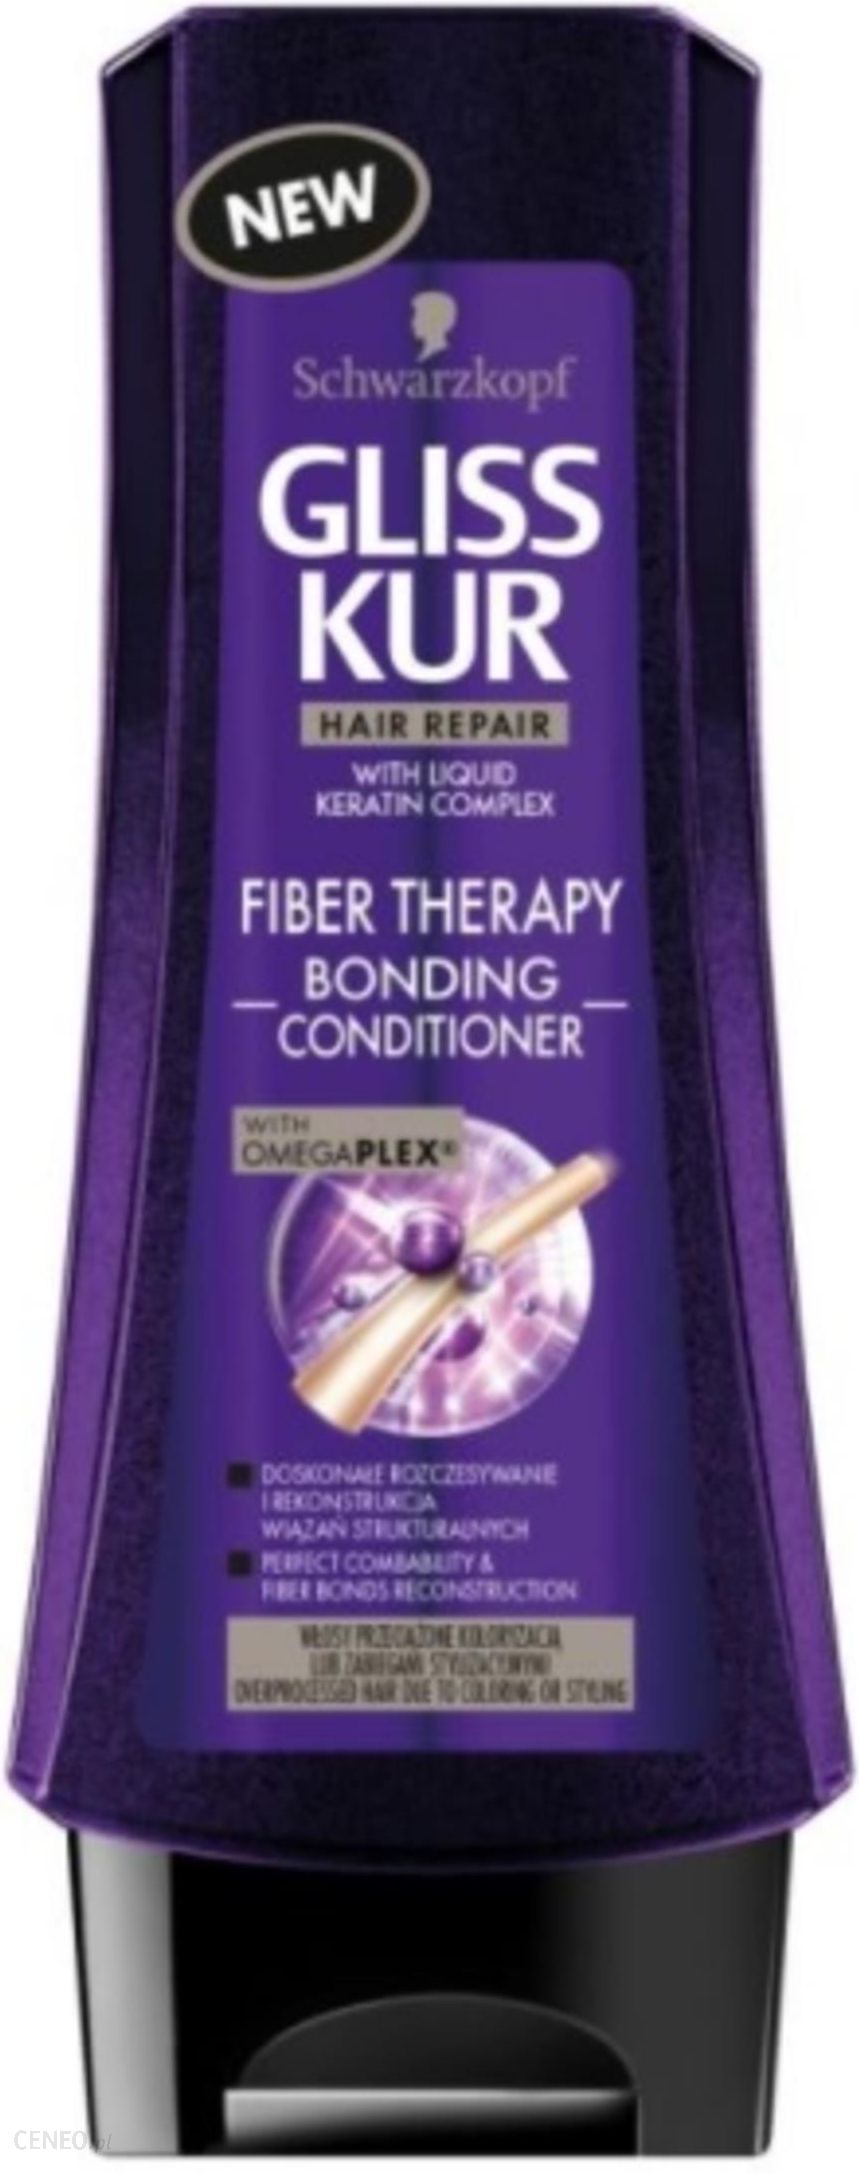 fiber therapy odżywka ekspresowa do włosów przeciążonych